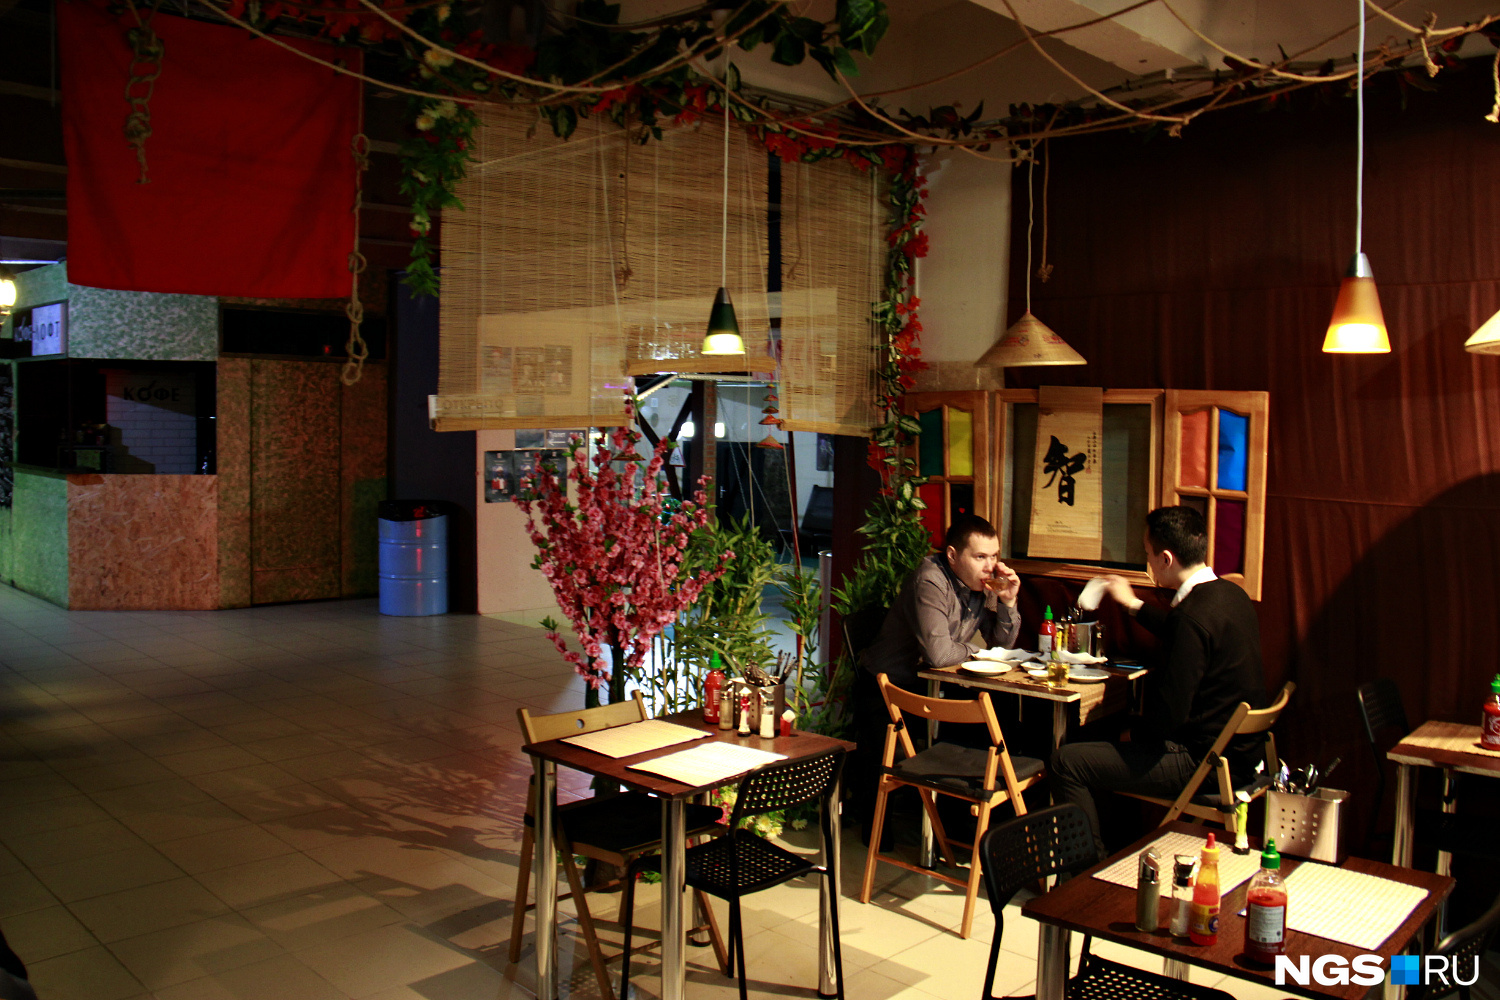 Несмотря на то что Chao Pho работает первый день, кафе оказалось единственным заведением в лофт-парке, где корреспондент НГС.НОВОСТИ застал посетителей